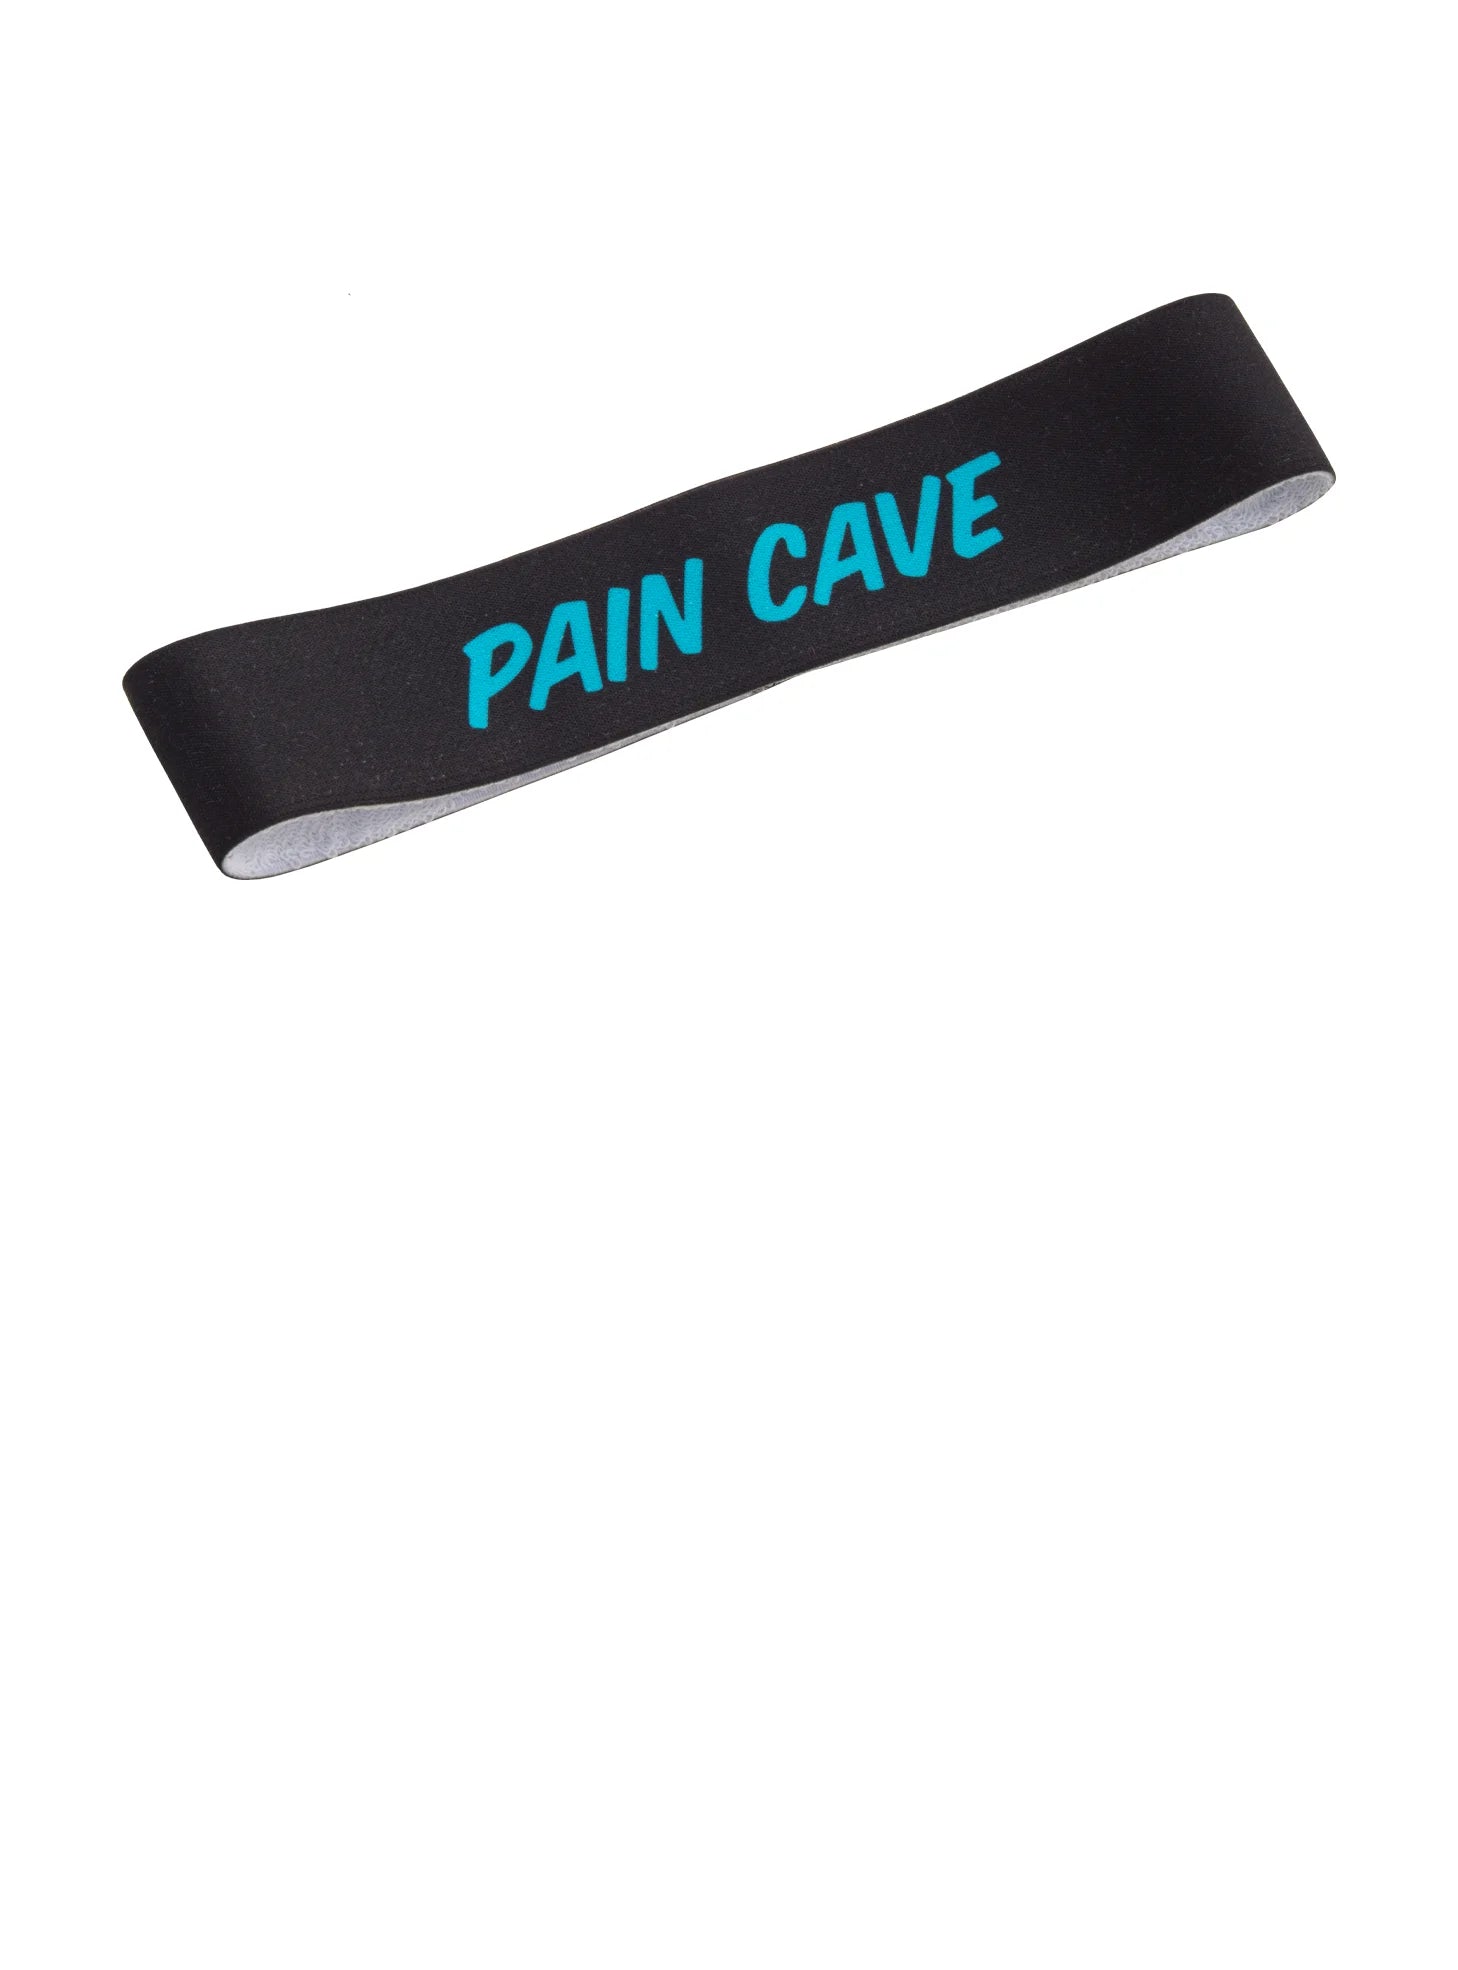 ZESTAW PAIN CAVE  CZARNY - MĘSKI - Opaska na głowę i ręcznik GRATIS